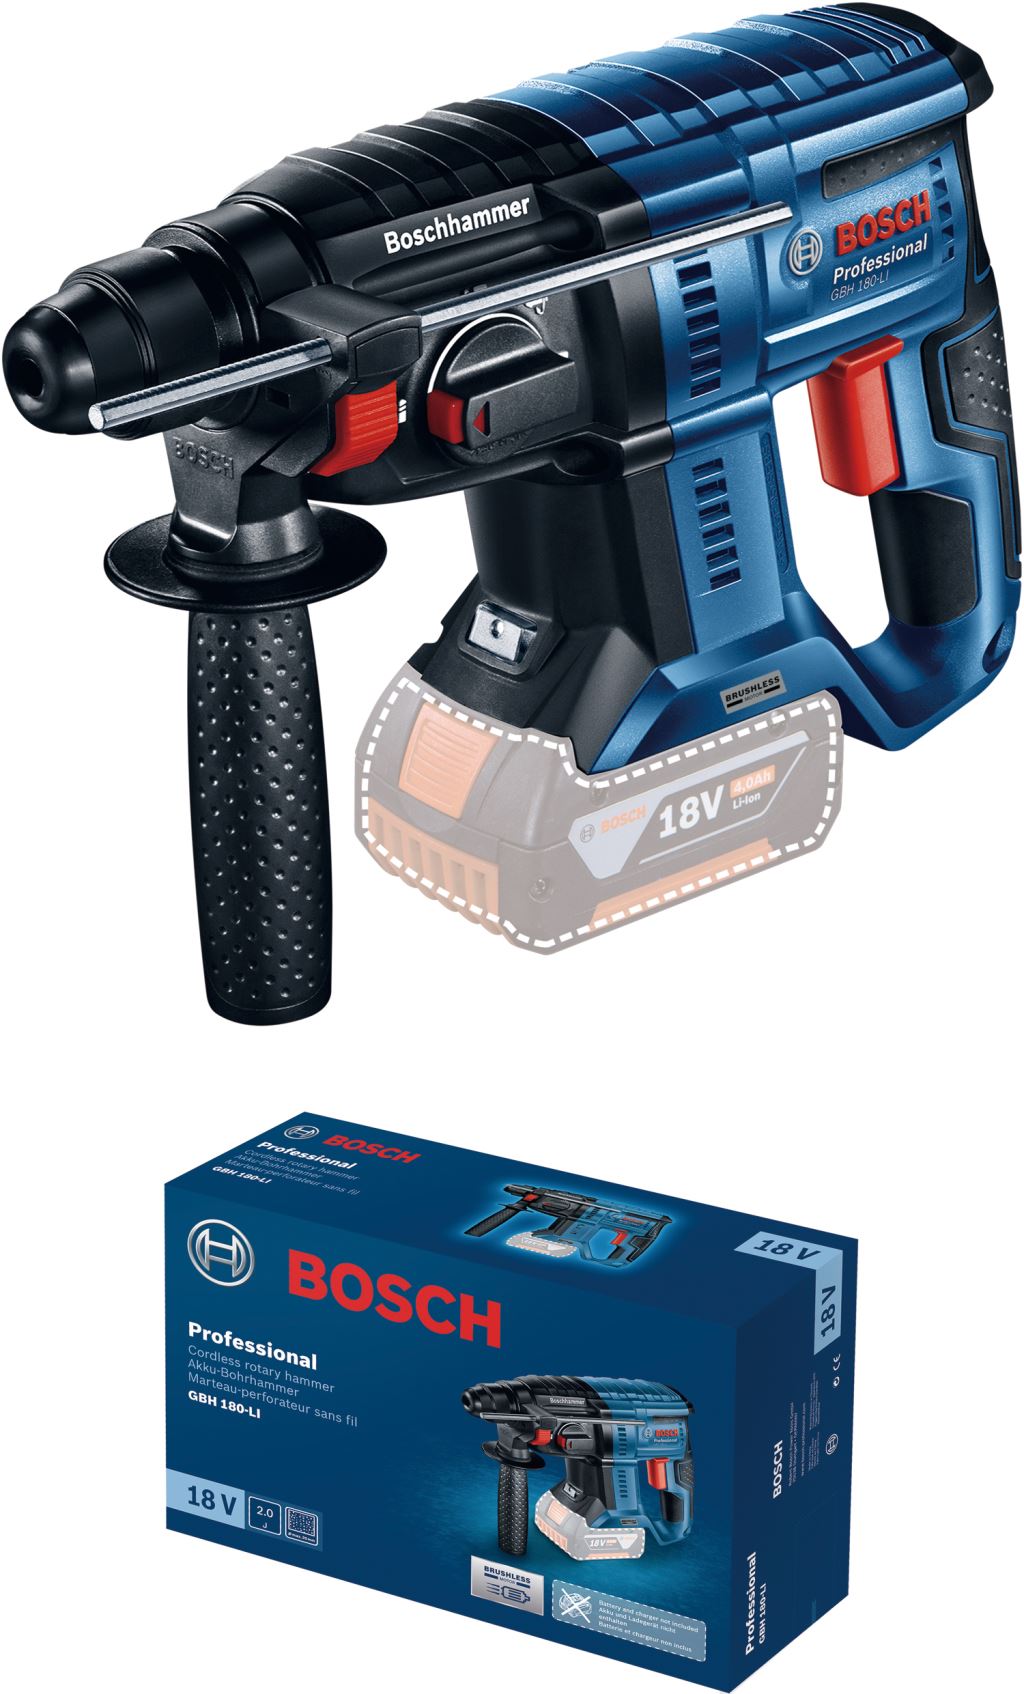 Bosch GBH 180-LI akkus fúrókalapács kartondobozban, akkumulátor nélkül (0611911120)